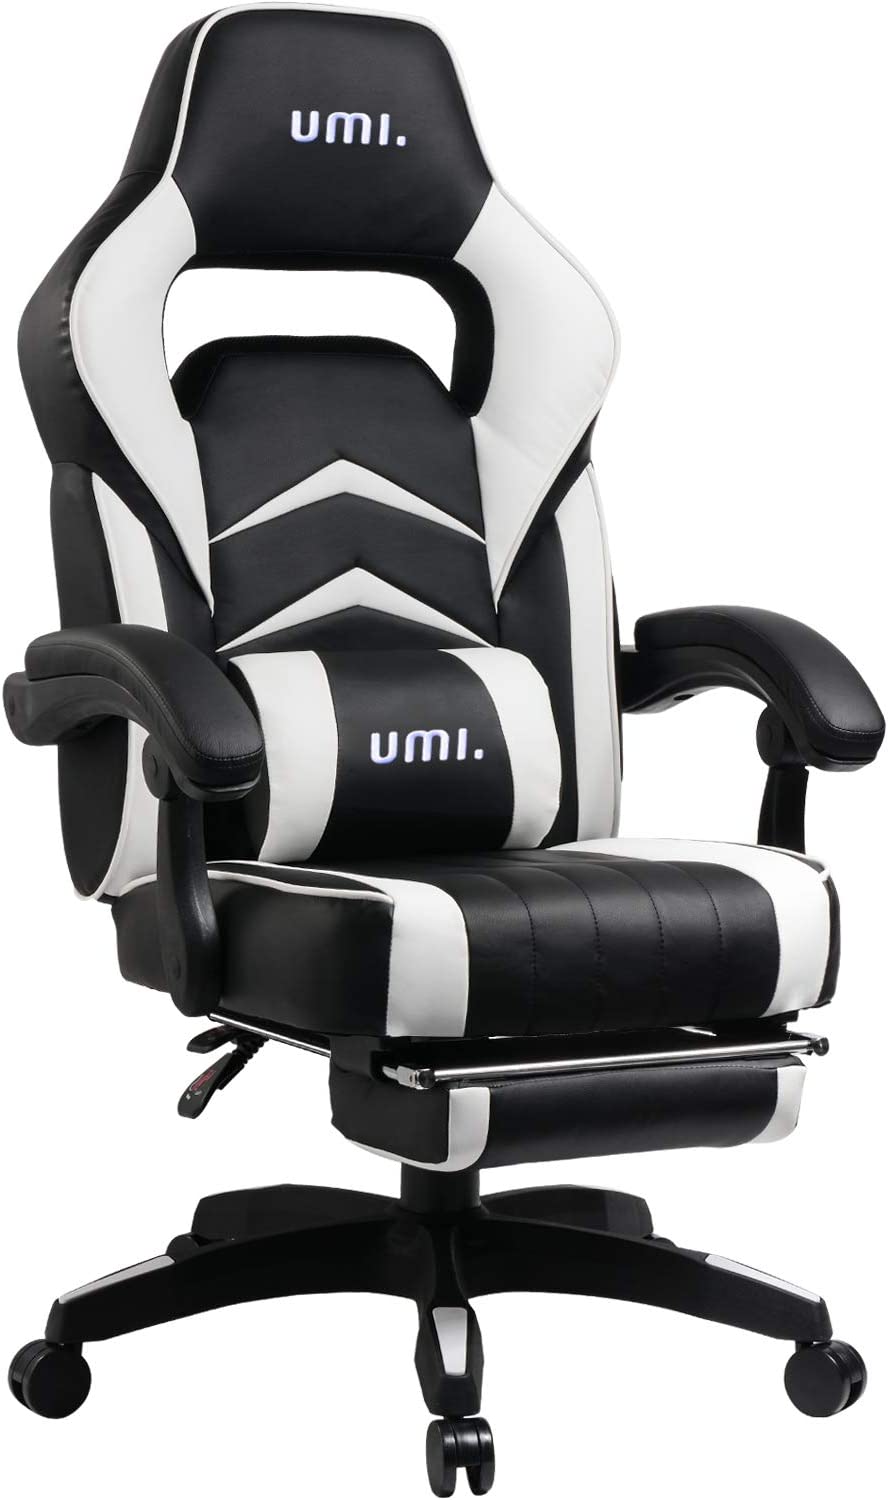 Ich habe den Umi Gaming Stuhl Bürostuhl selbst ausprobiert